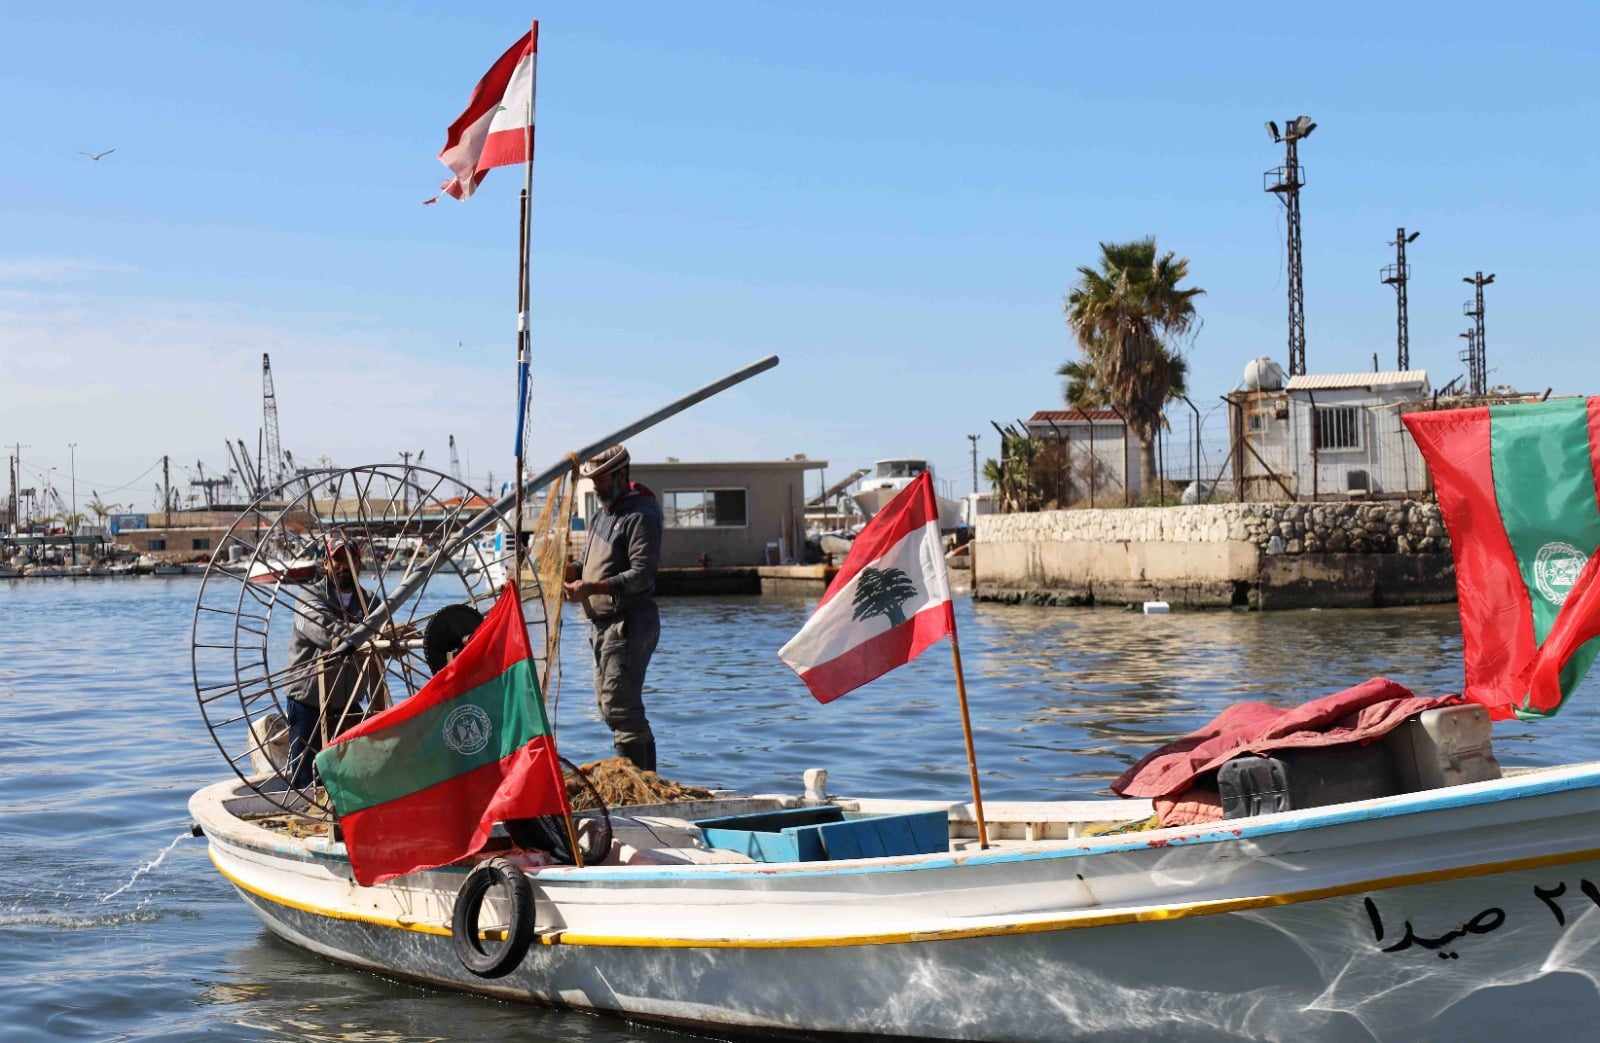 النائب سعد من المسيرة البحرية للصيادين في الذكرى الـ 49 لاستشهاد معروف سعد: لا زلنا نناضل مع الصيادين والفئات المنتجة من أجل استعادة الحقوق